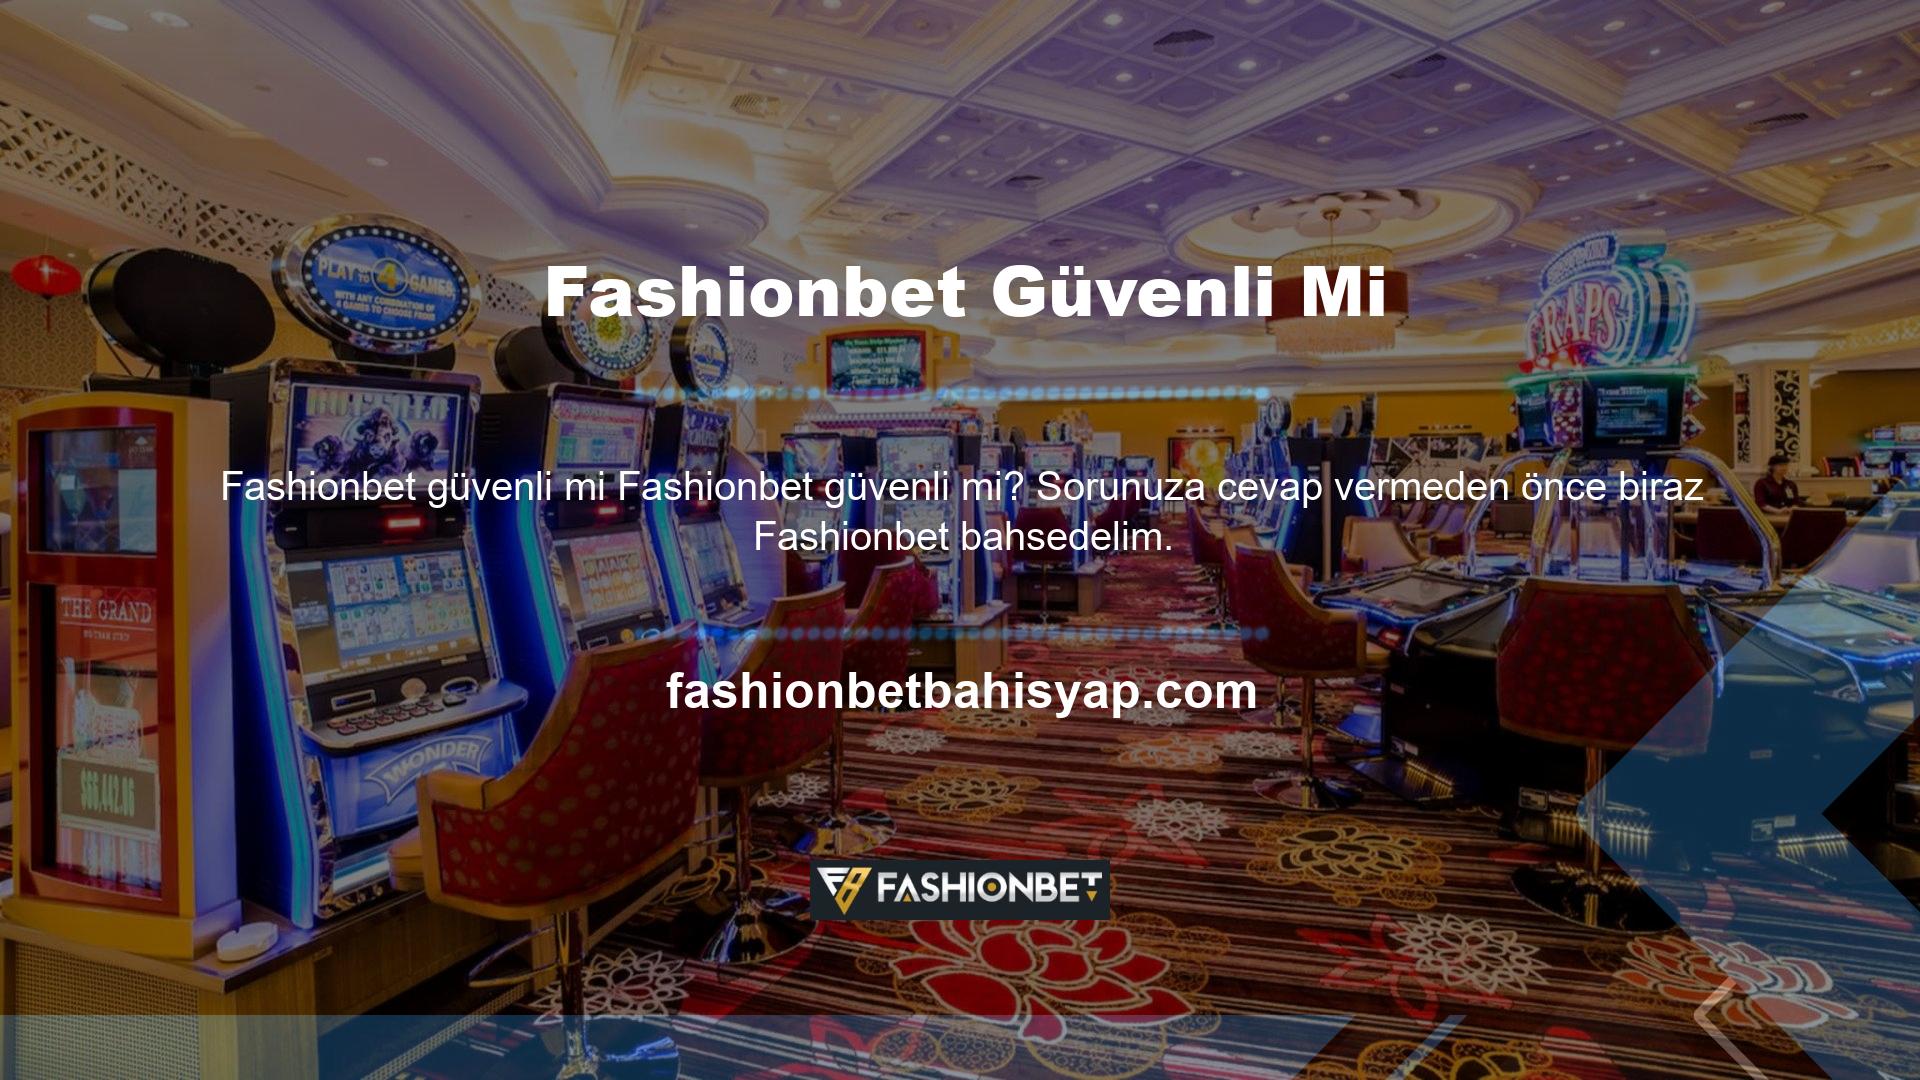 Casino ve casino sitesi Fashionbet, Rusya'daki operasyonlarını yönetmek için casino sektörüne girdi